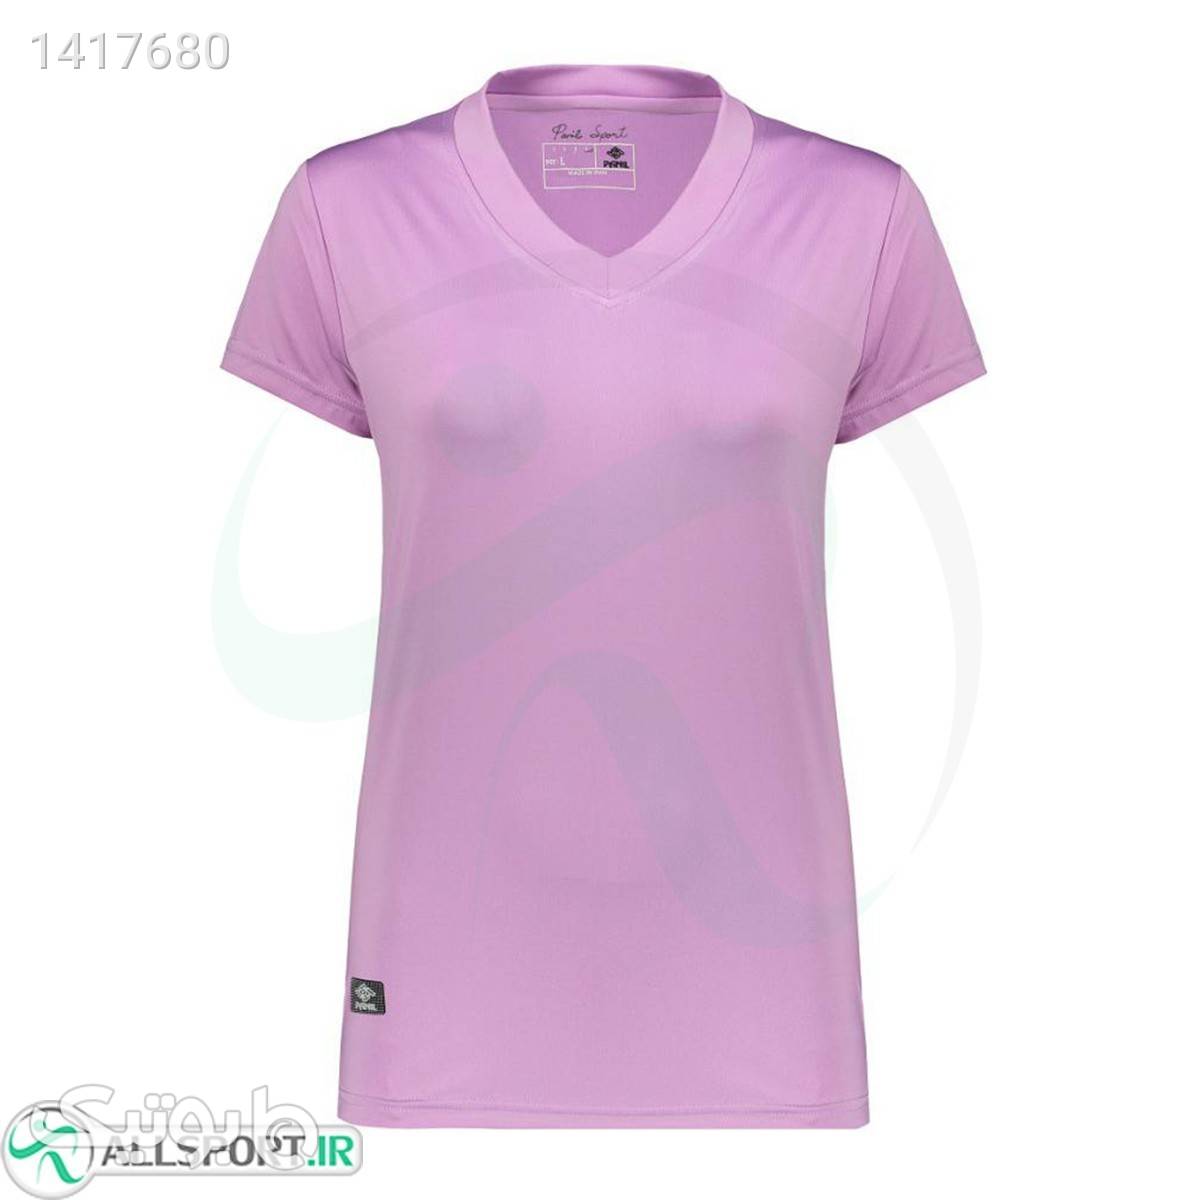 تی شرت ورزشی زنانه بنفش کد 174